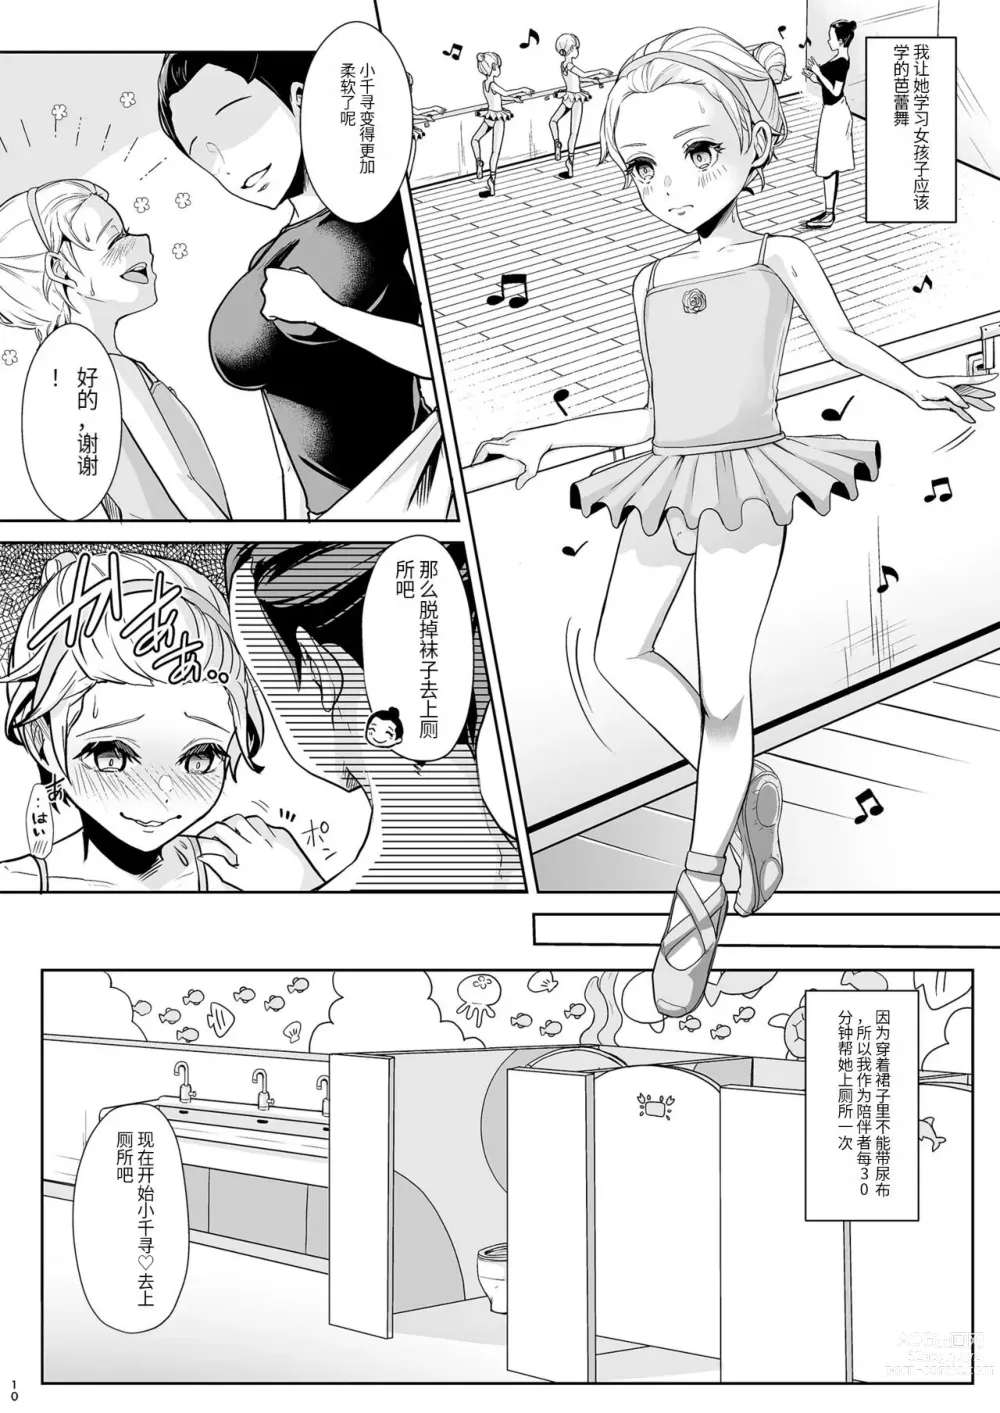 Page 11 of doujinshi Sonogo no Omorashi Sensei